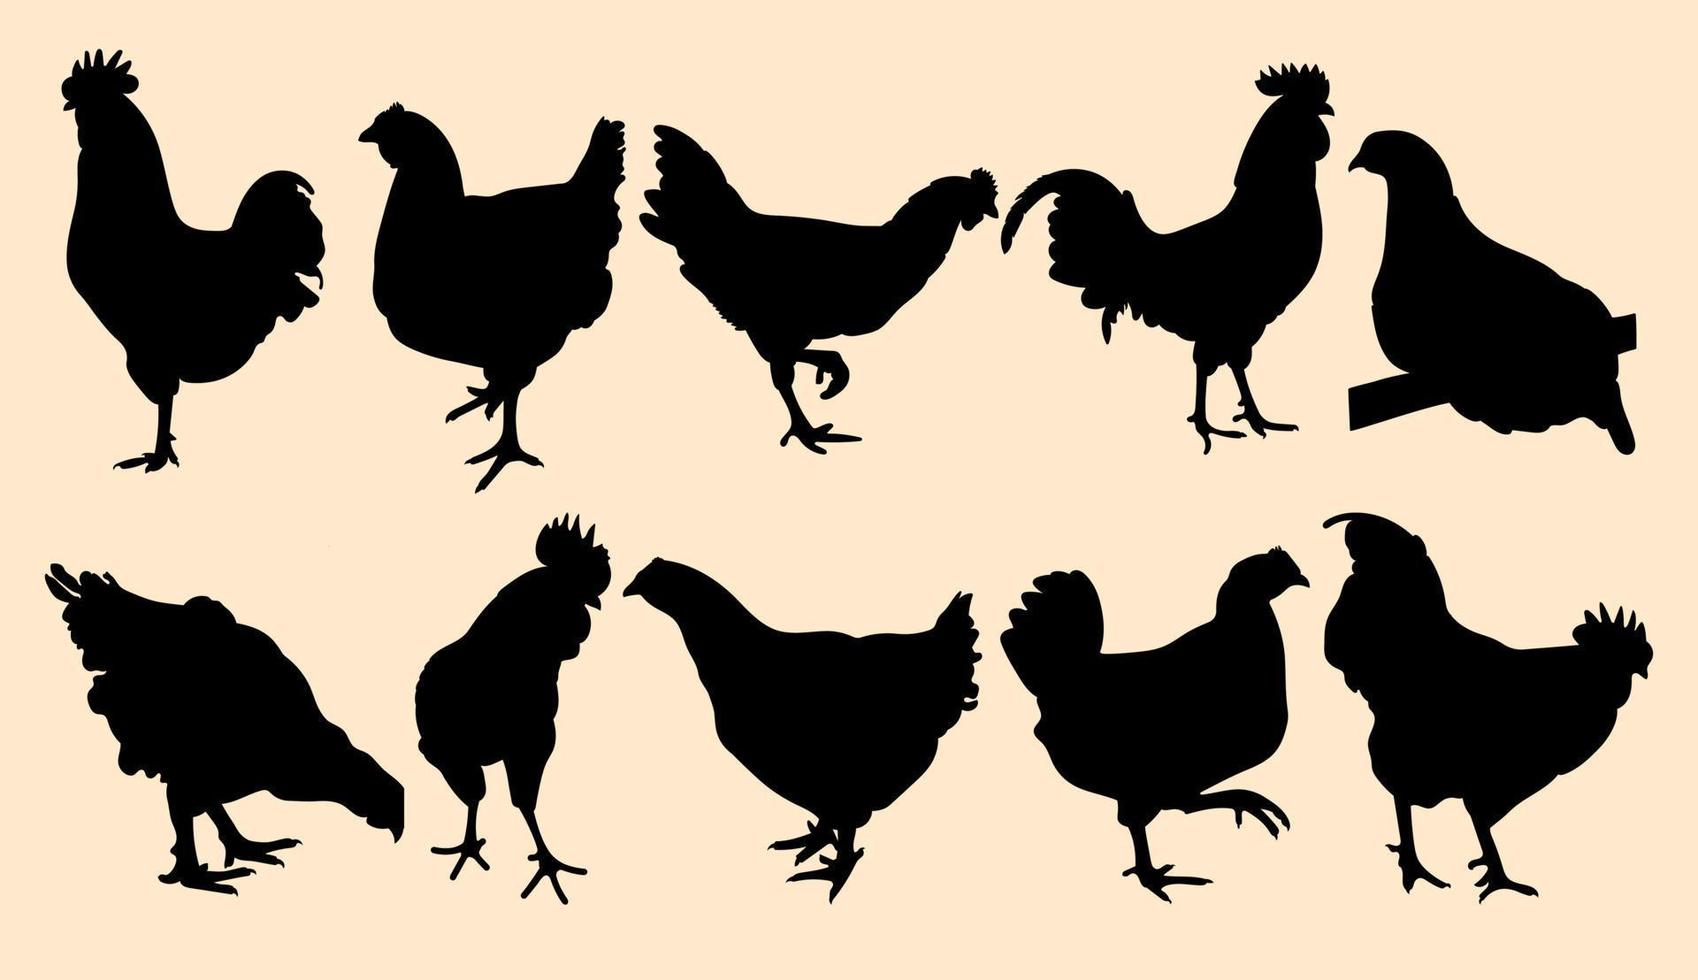 poner gallo, gallo, gallo, pollo, gallina, pollito, posición de pie, siluetas de aves de corral dibujadas a mano, vector aislado